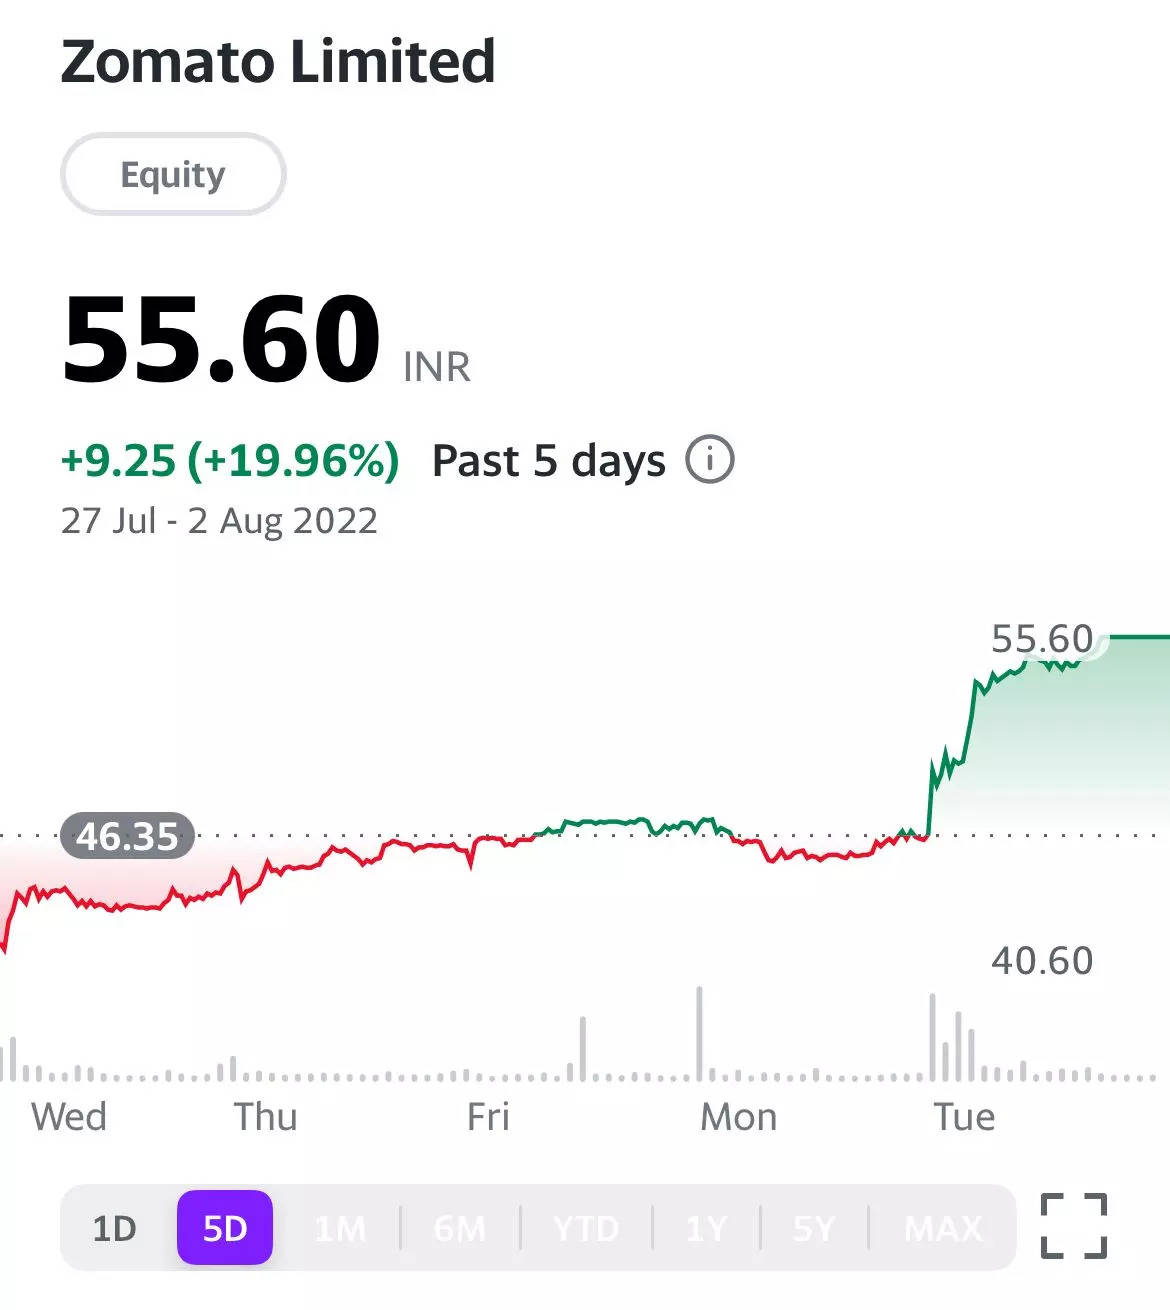 Zomato stock